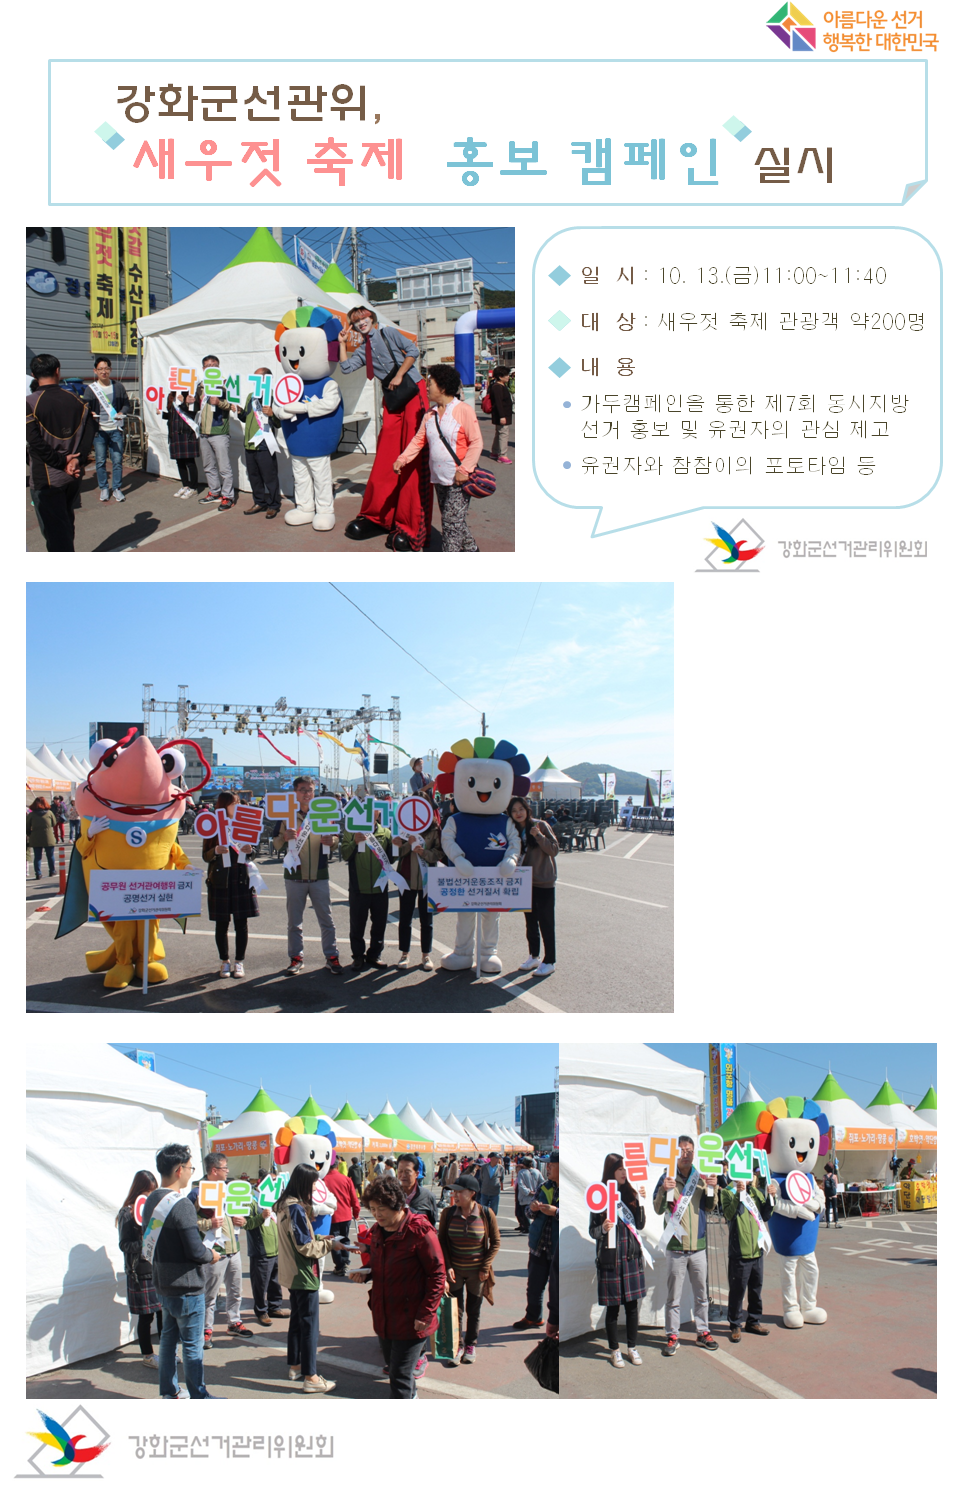 강화군선관위 새우젓 축제 홍보 캠페인 실시